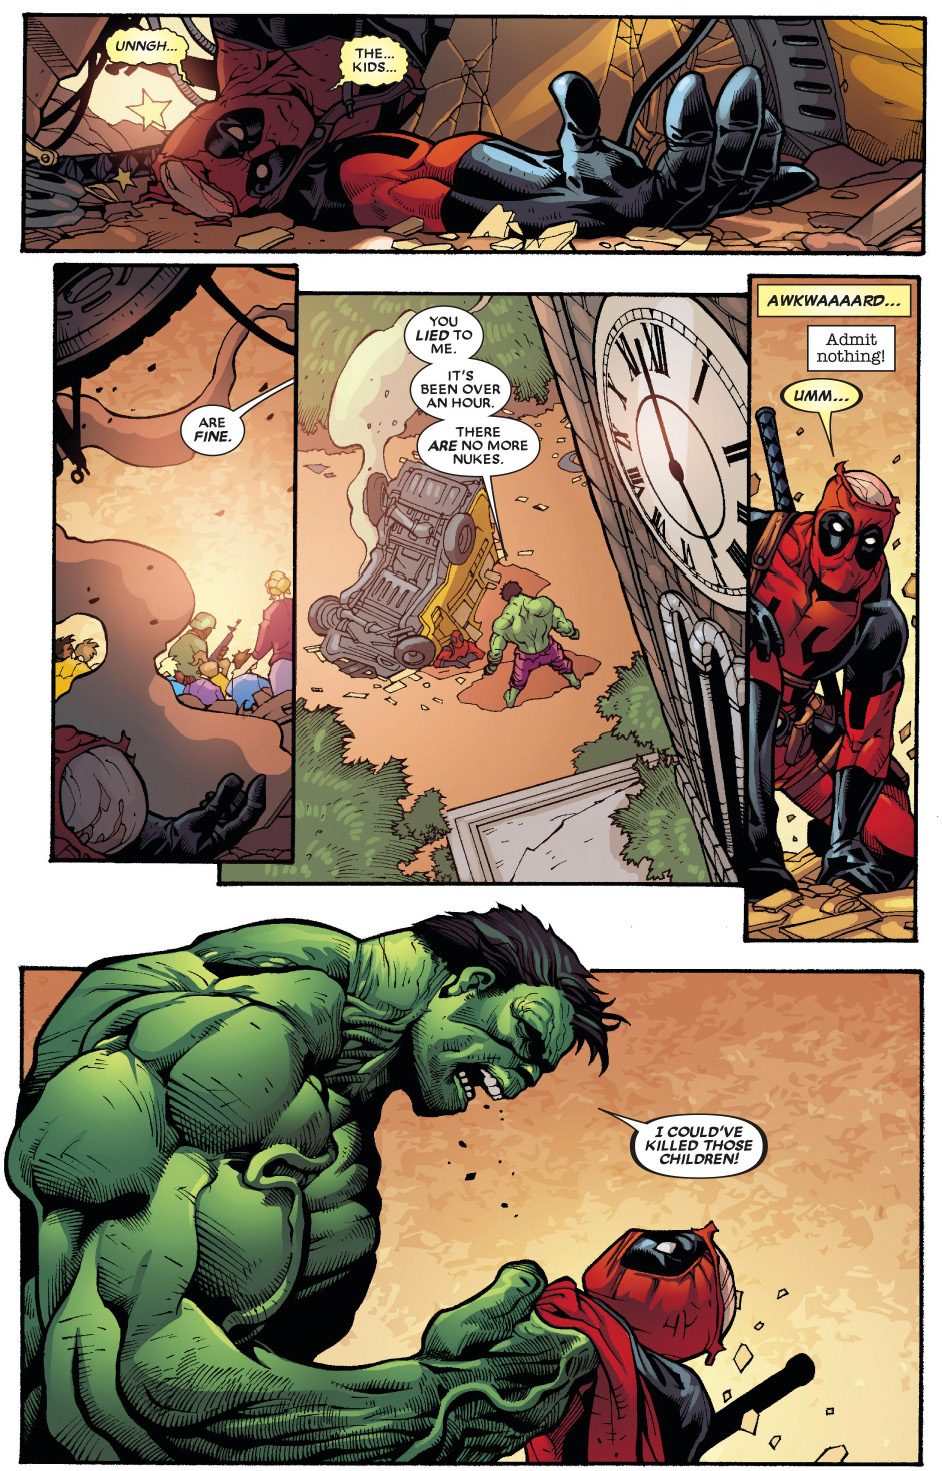 the hulk smahes deadpool